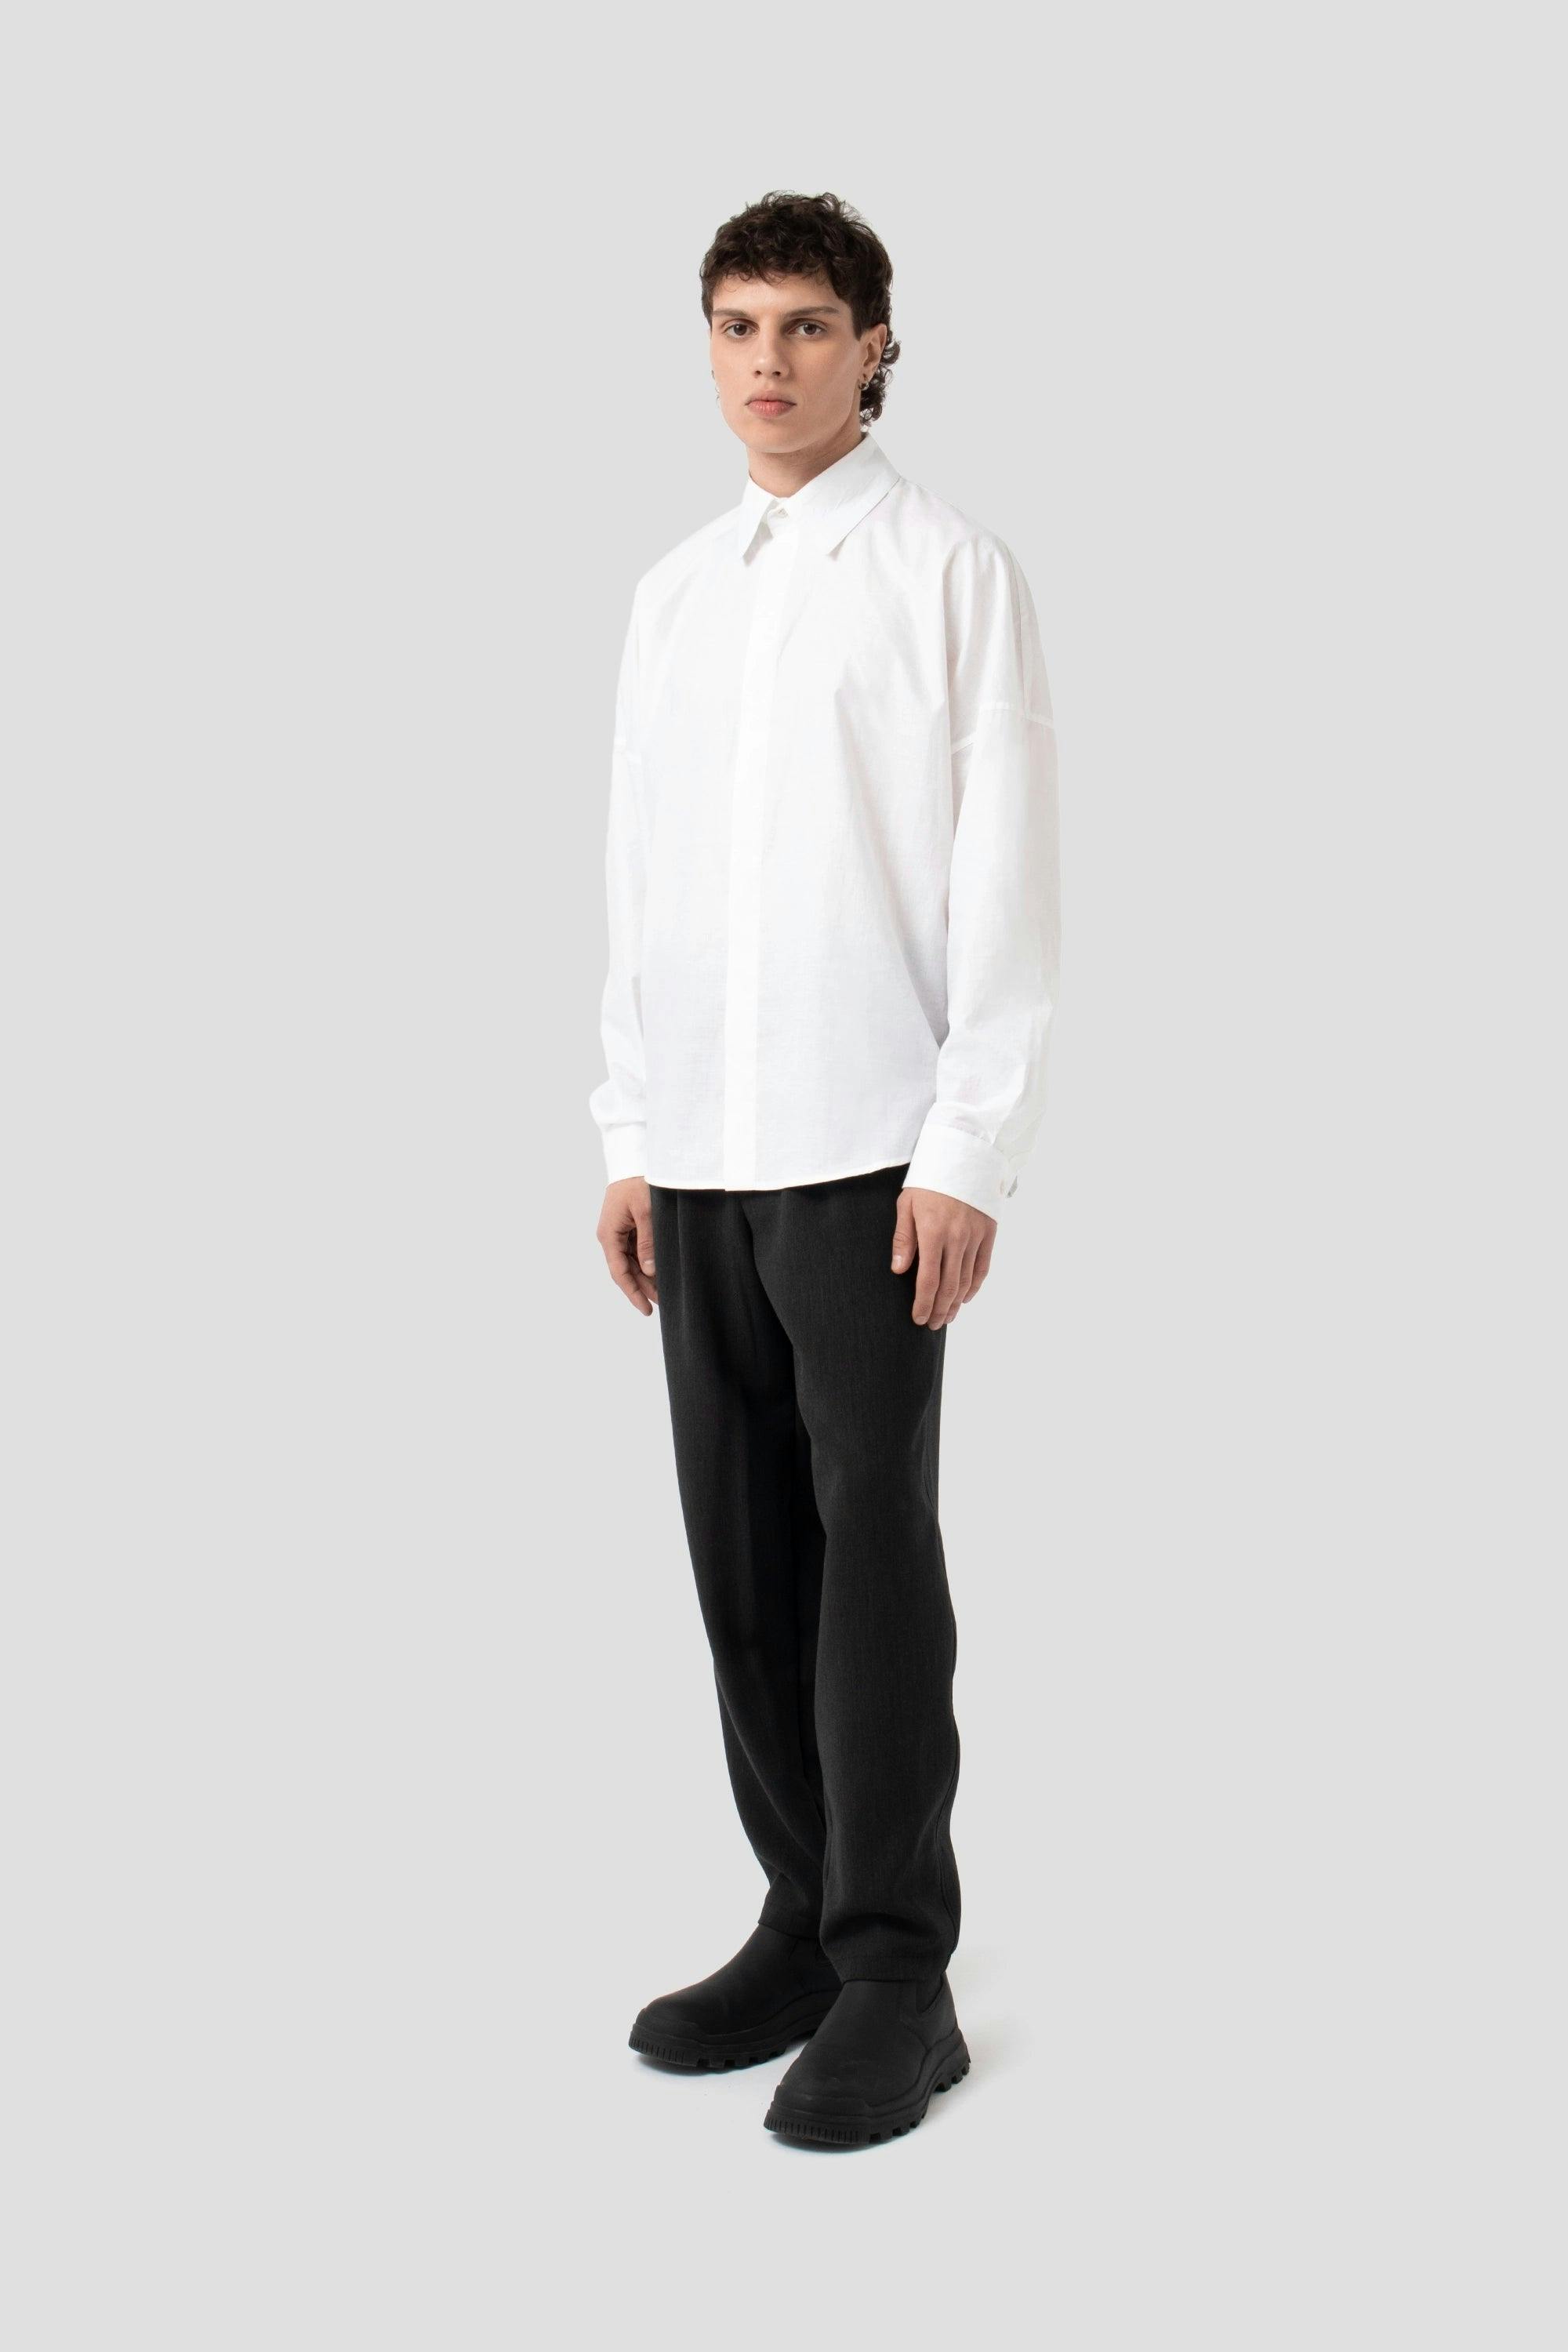 JNORIG White Long-Sleeved dress Shirt